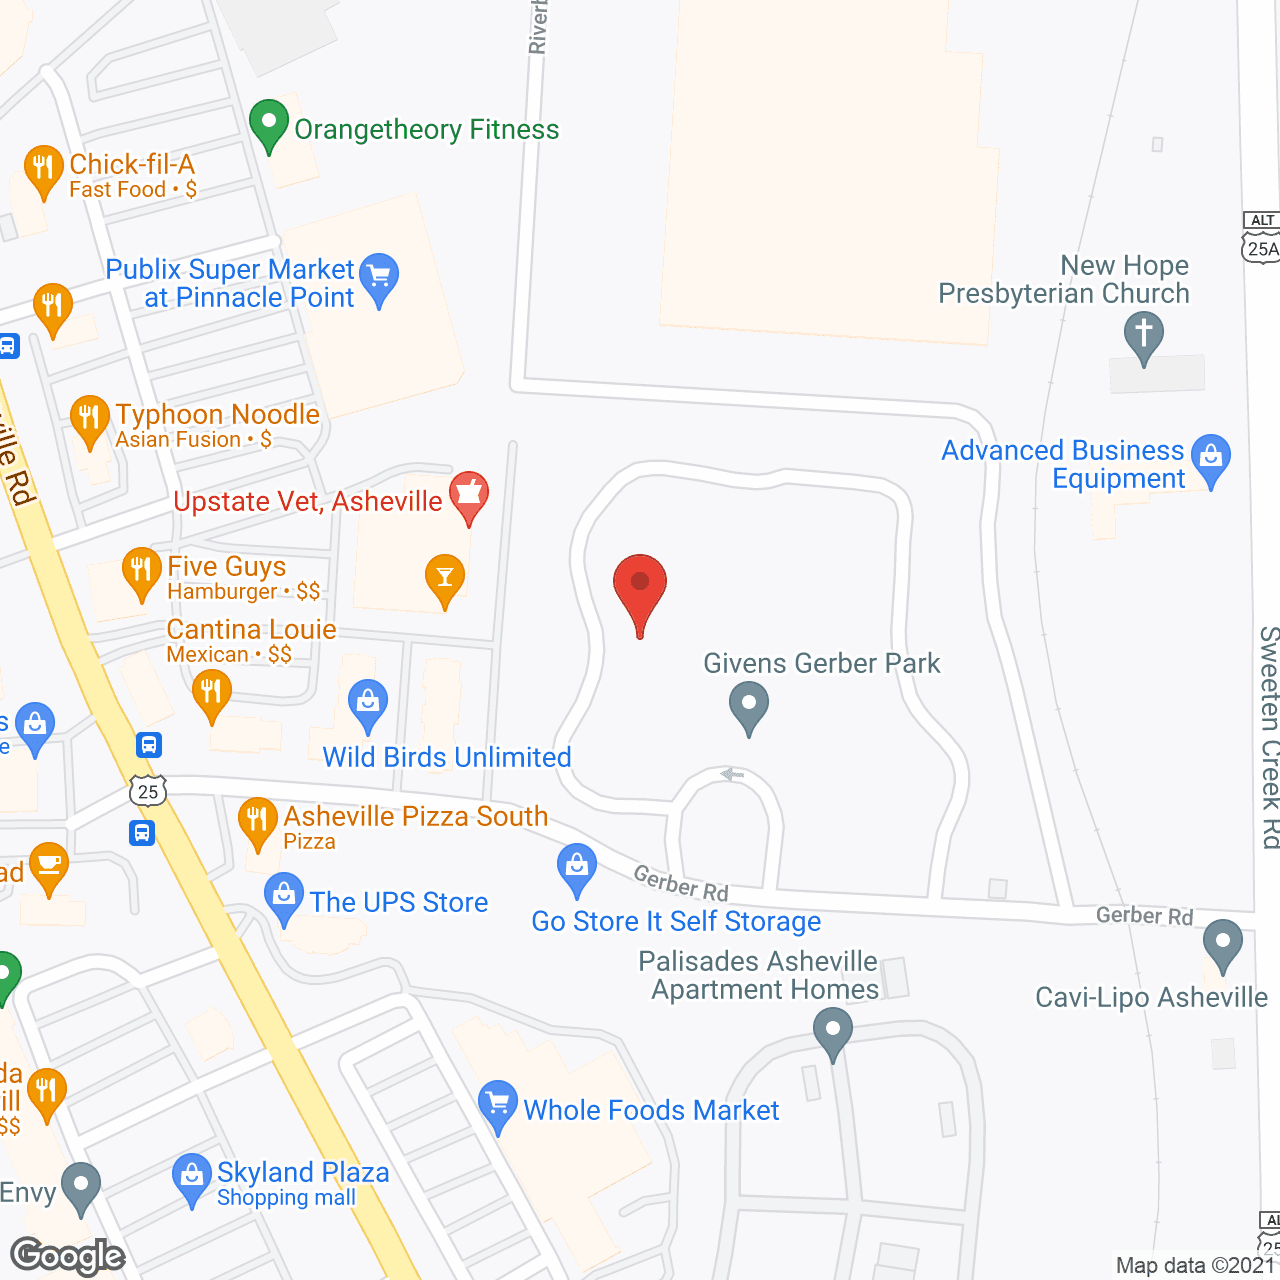 60 Givens Gerber Park in google map